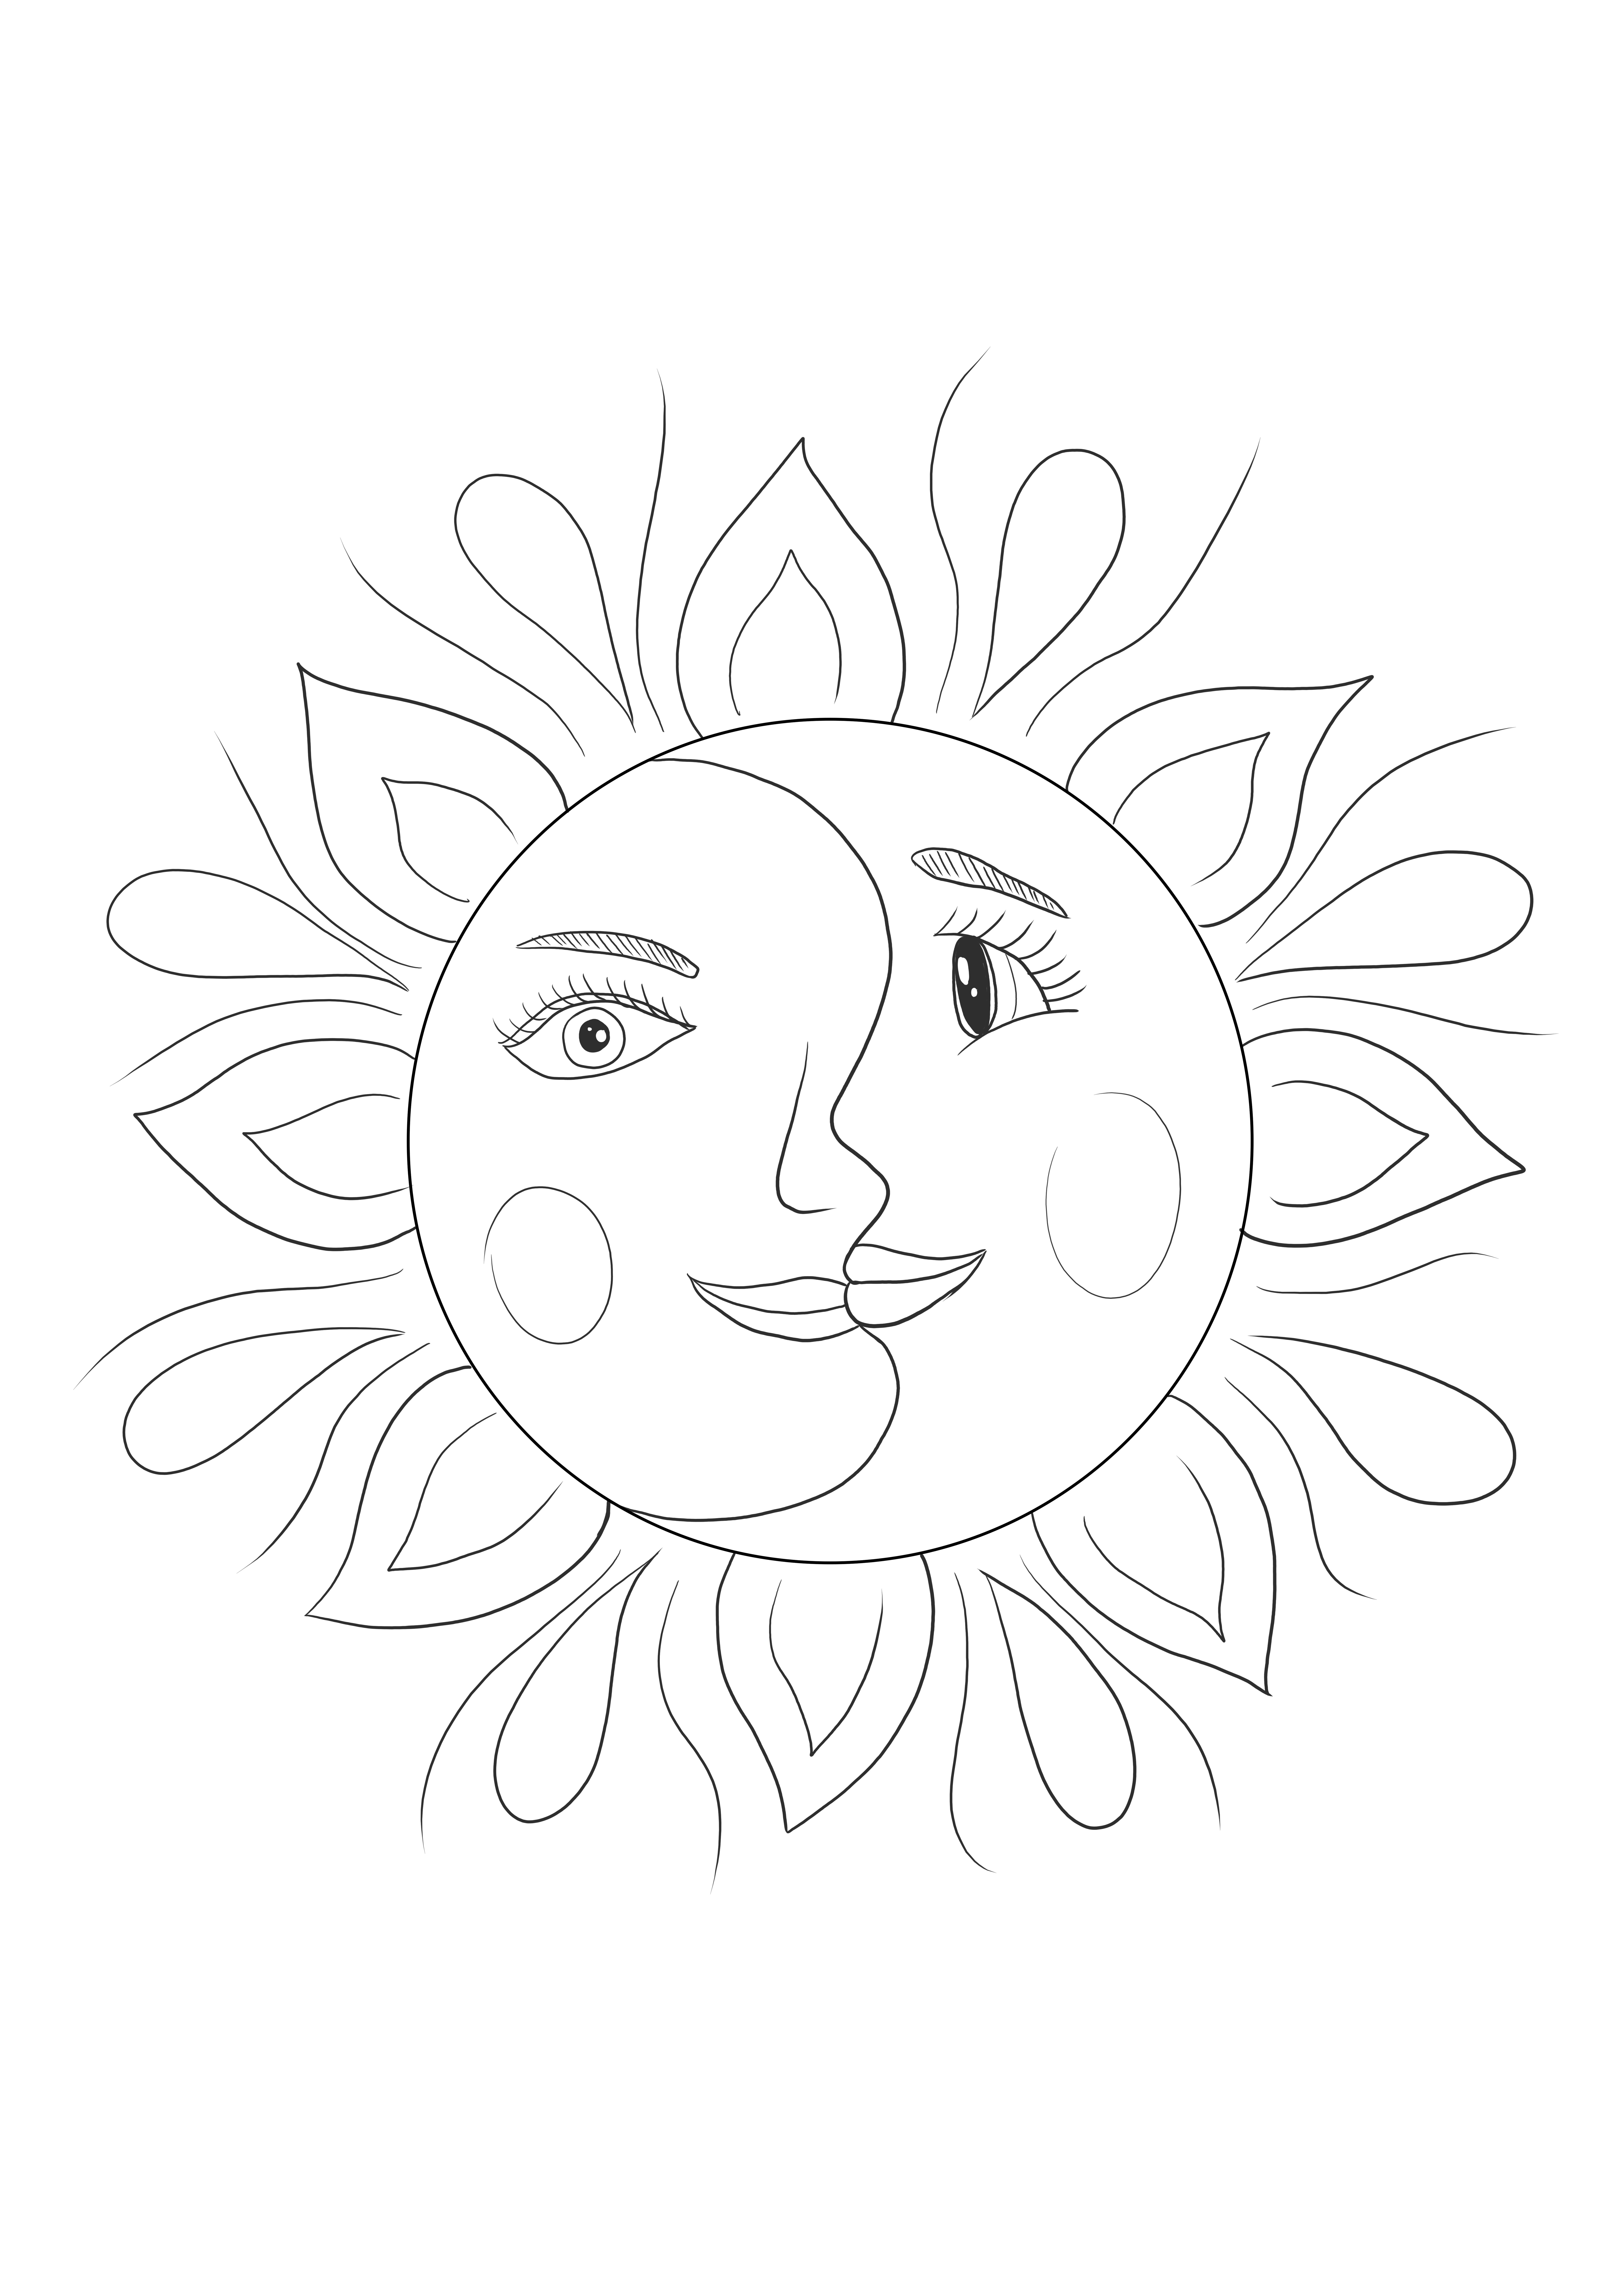 Sonne und Mond im psychedelischen Kunststil für Kunstliebhaber, Kinder oder Erwachsene